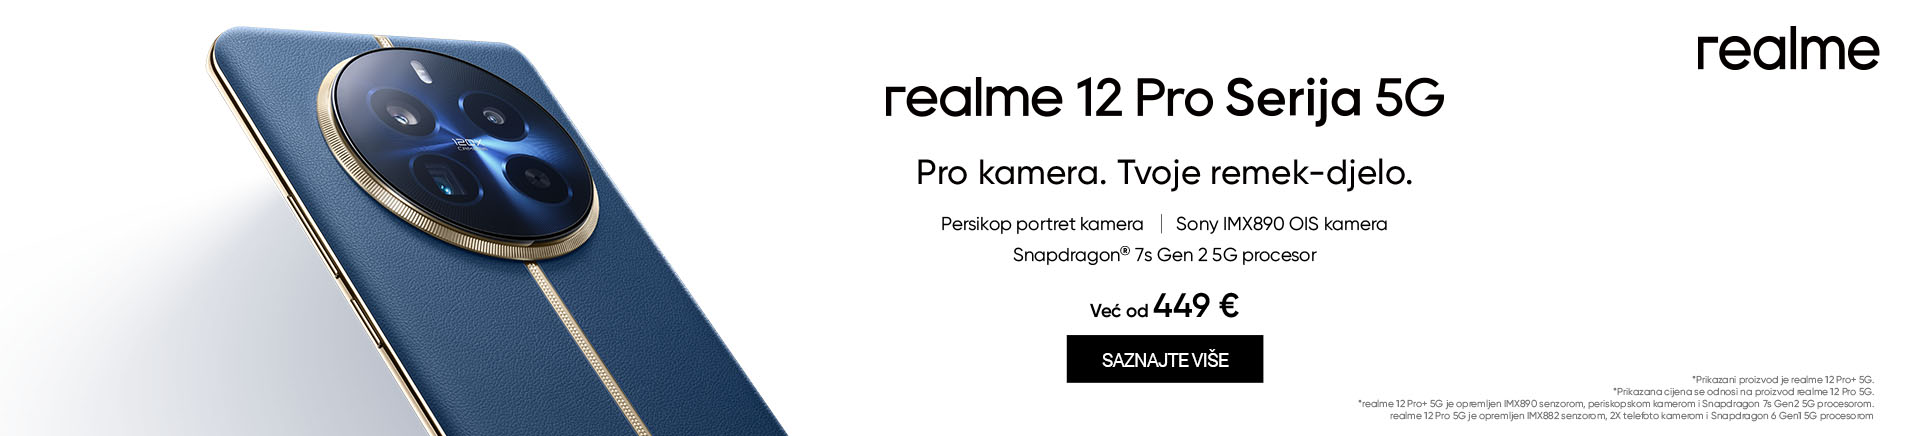 HR Realme 12 Pro 5G serija MOBILE 760 X 872.jpg